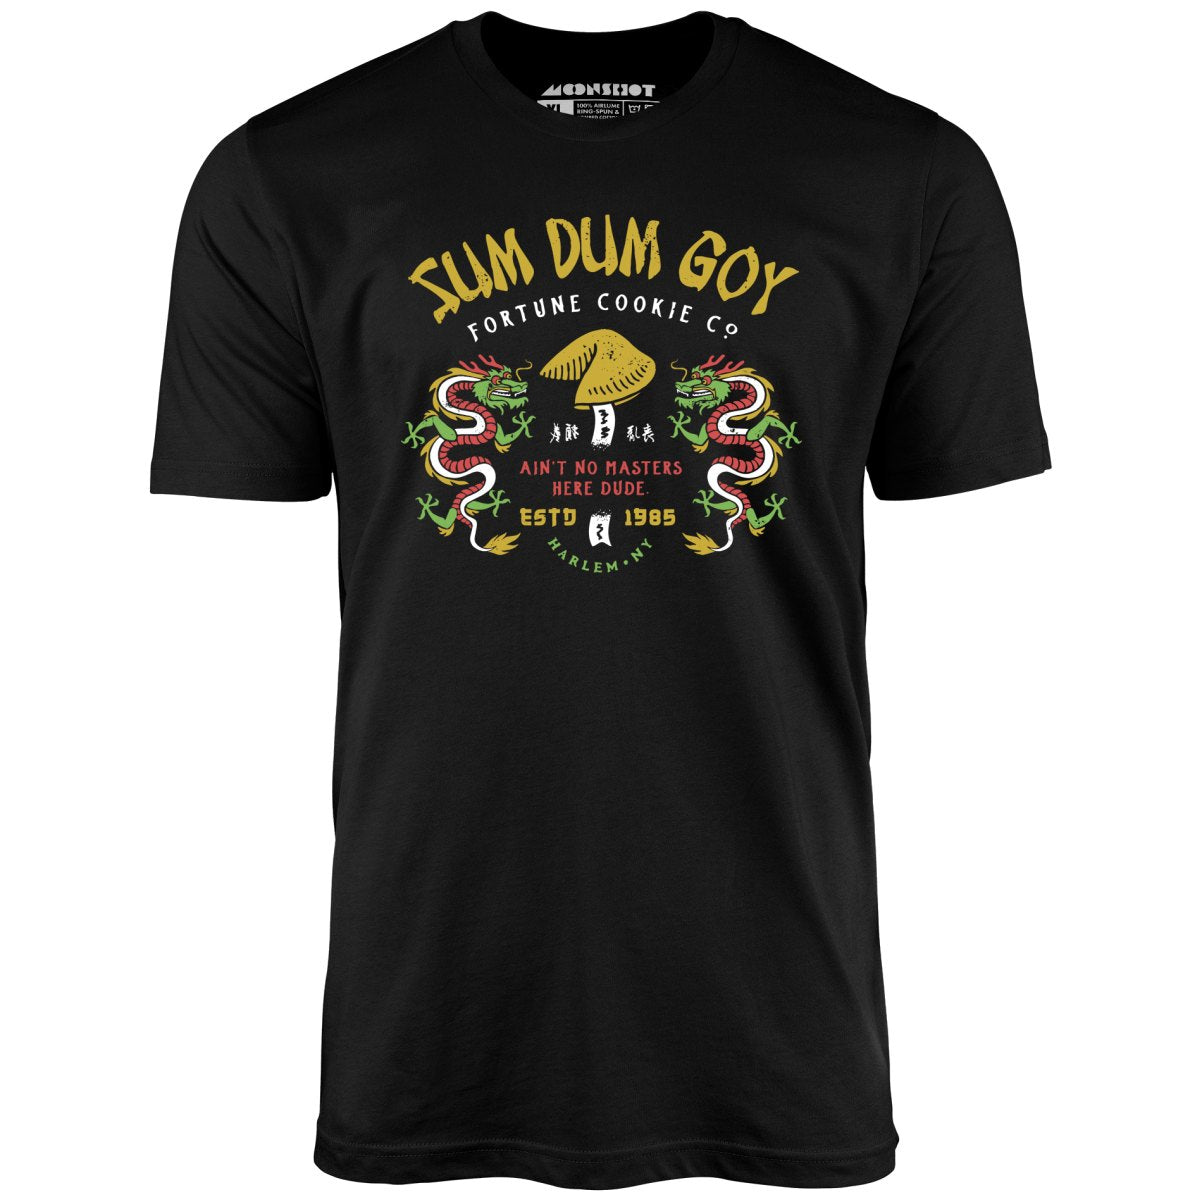 Sum Dum Goy Fortune Cookie Co. - Last Dragon - Unisex T-Shirt